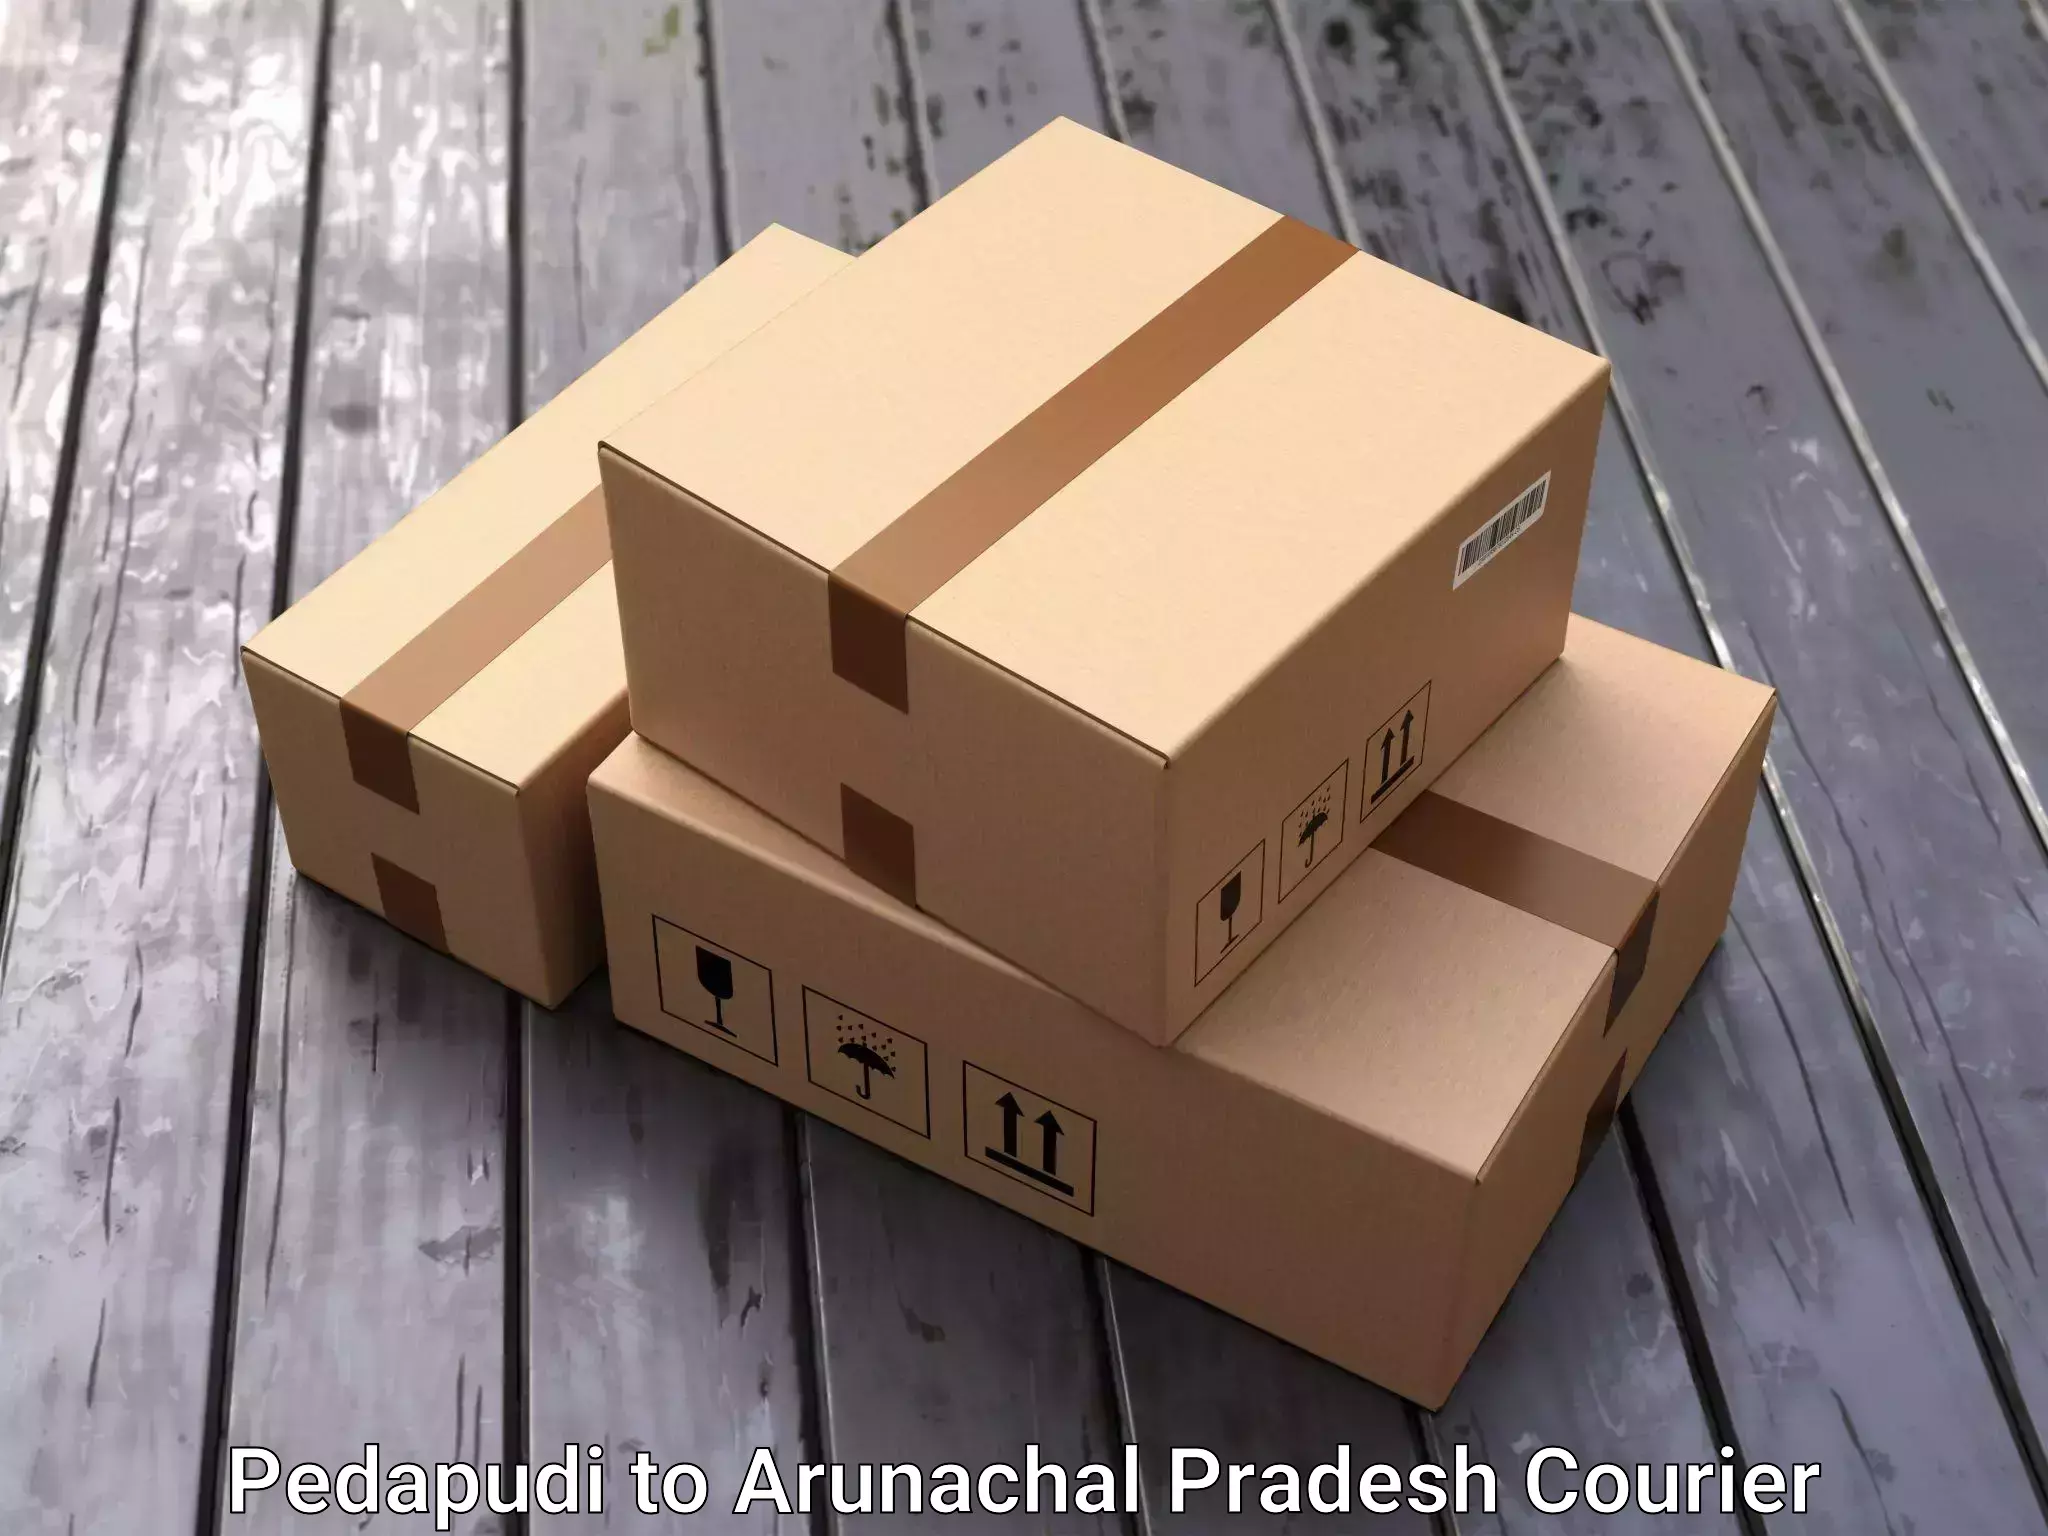 Furniture moving experts Pedapudi to Arunachal Pradesh